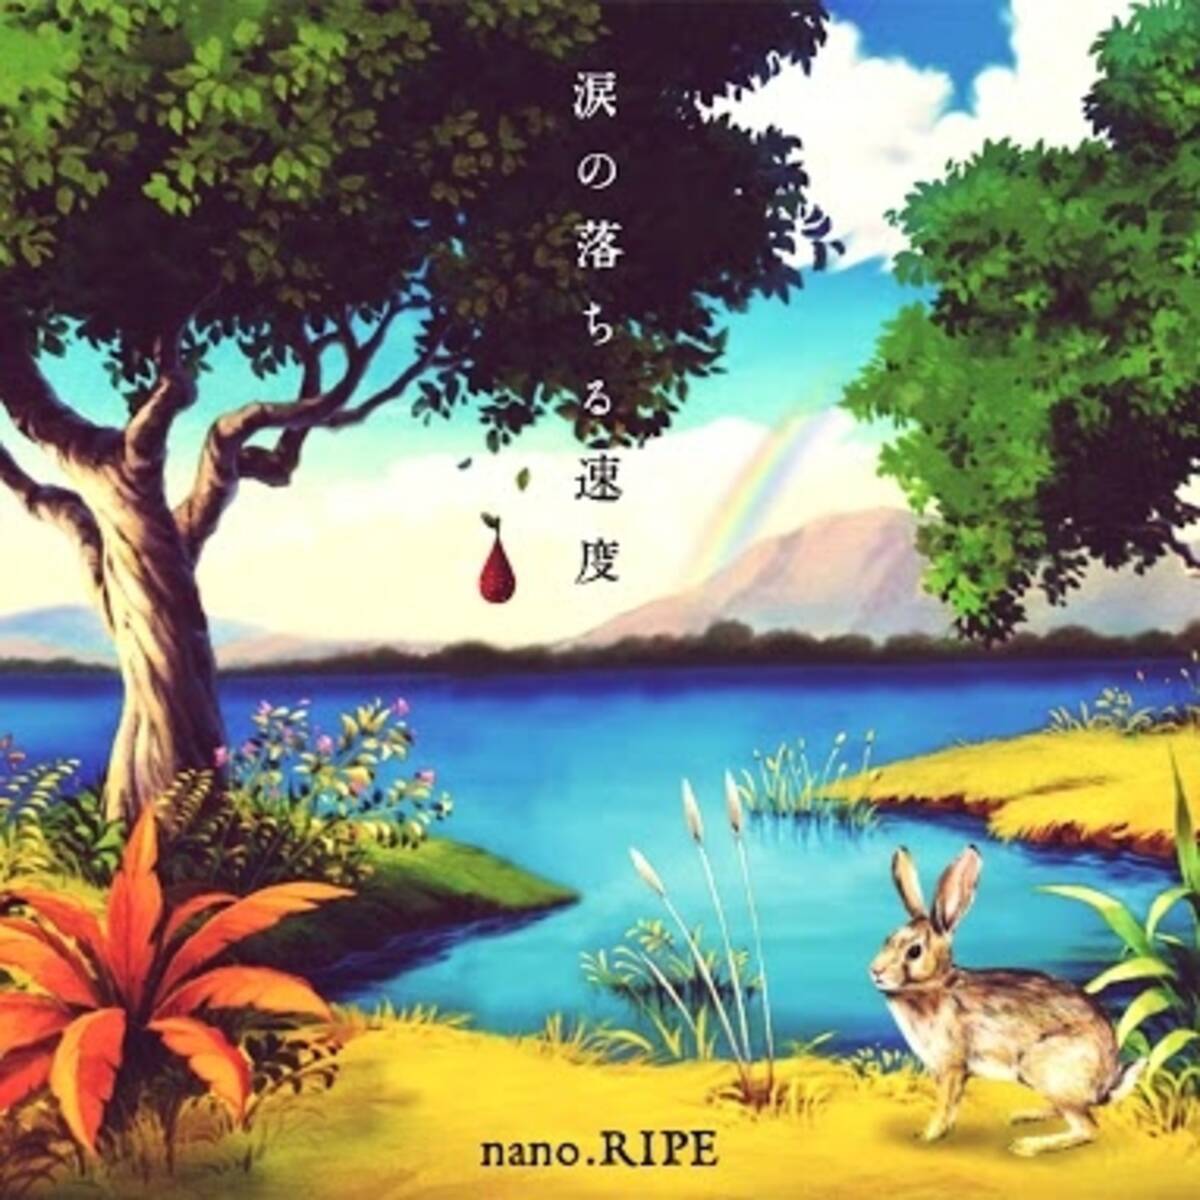 Nano Ripeの3rdアルバム 涙の落ちる速度 が2種類の初回限定盤と通常盤の3タイプでリリース 14年1月8日 エキサイトニュース